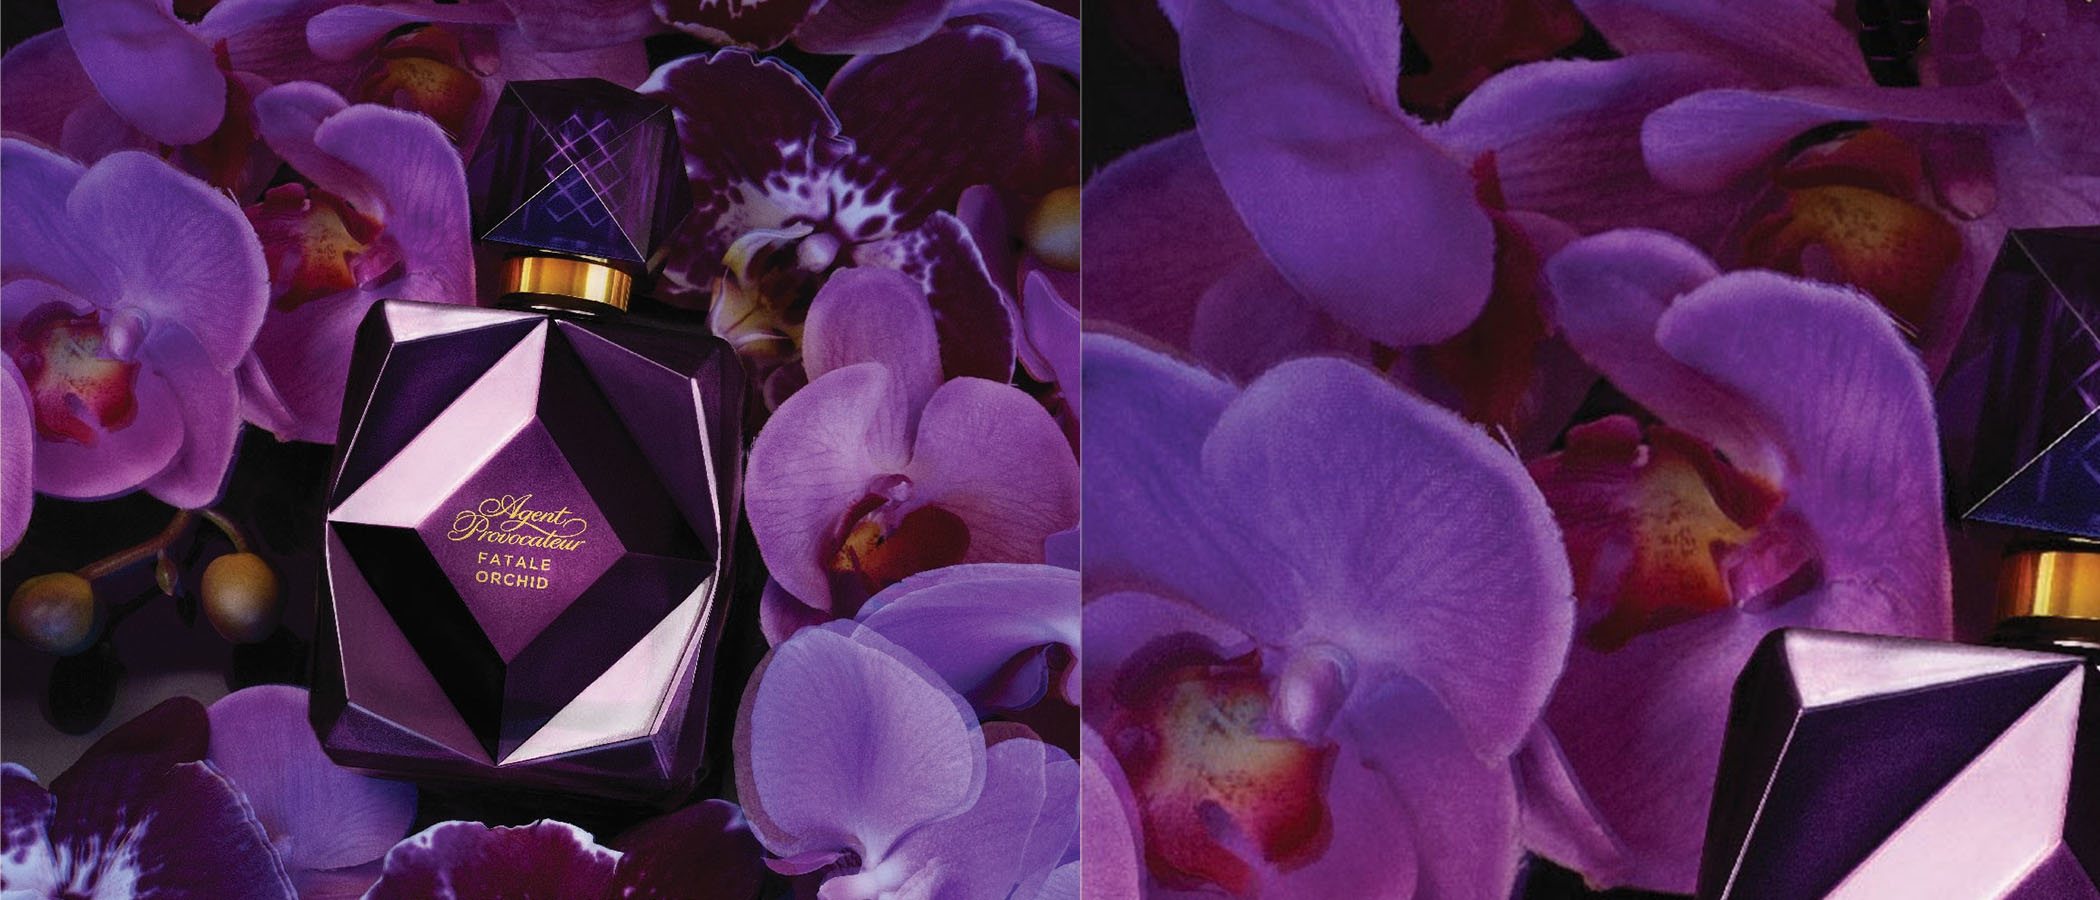 La firma lencera Agent Provocateur presenta 'Fatale Orchid', su nueva fragancia